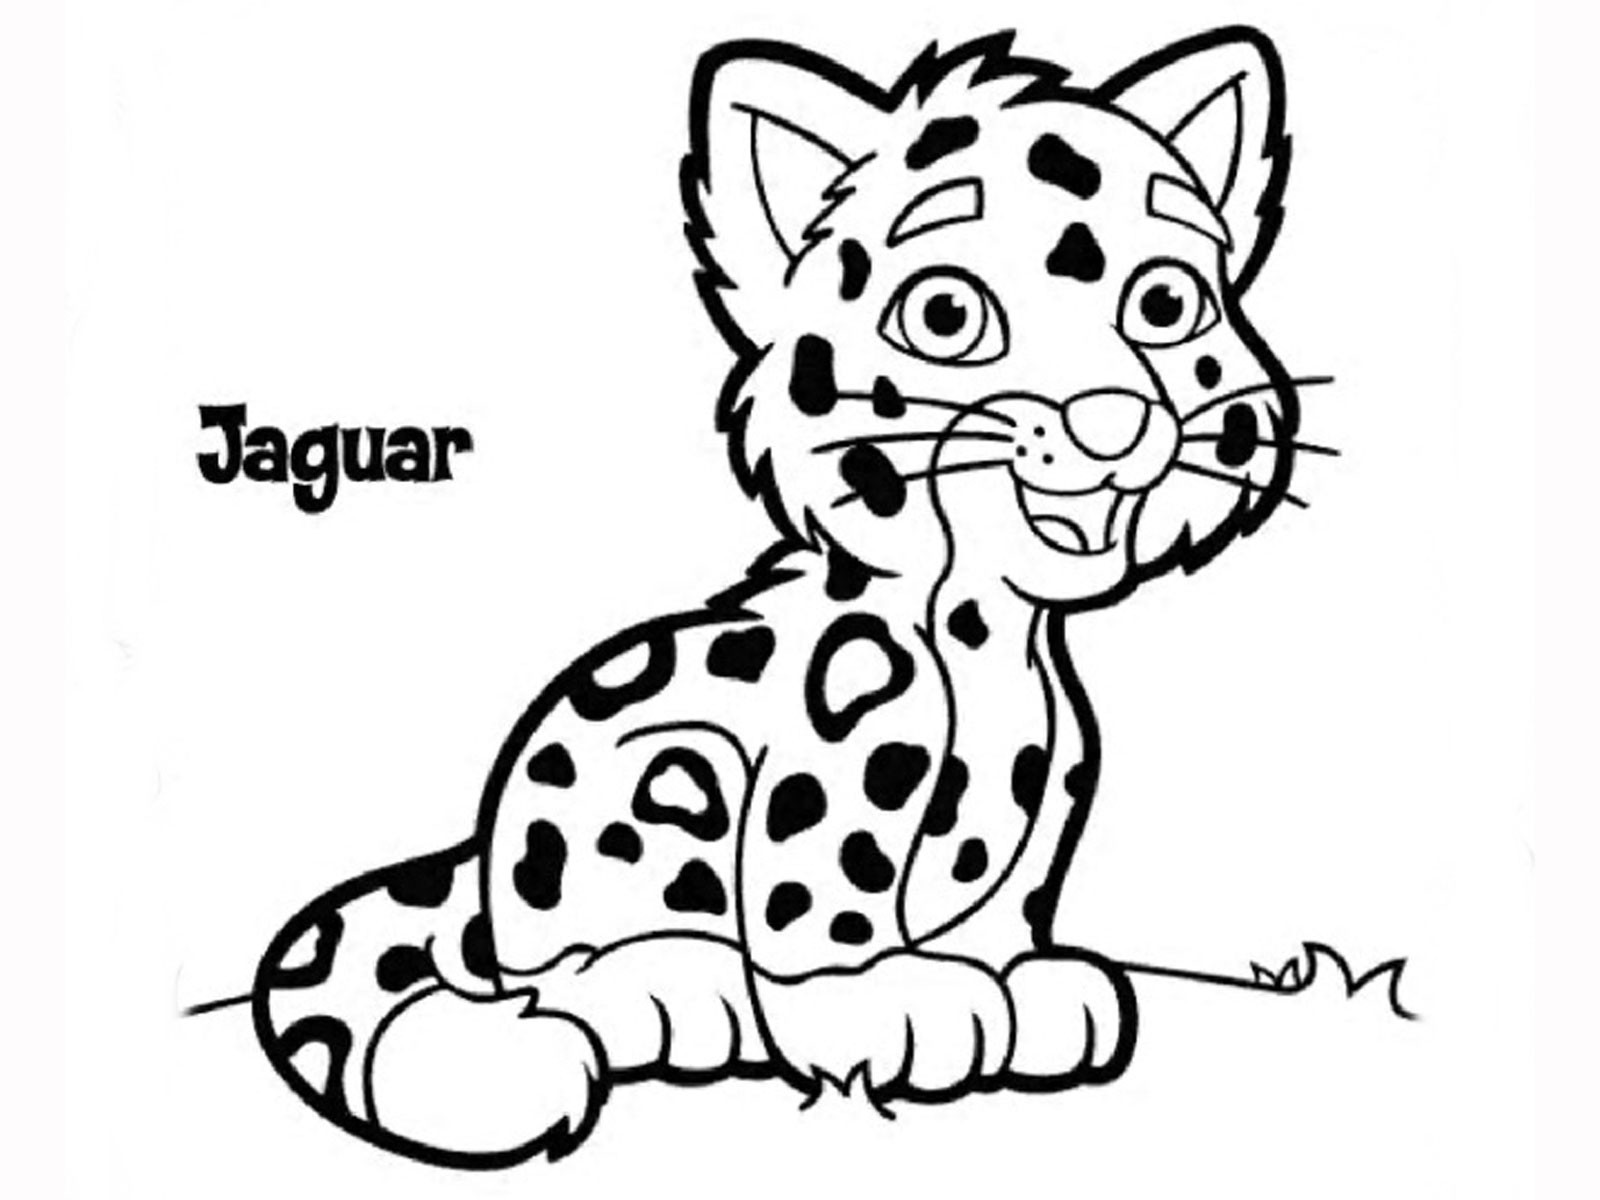 Baby Cheetah Coloring Pages
 Cheetah Drawing Kids at GetDrawings